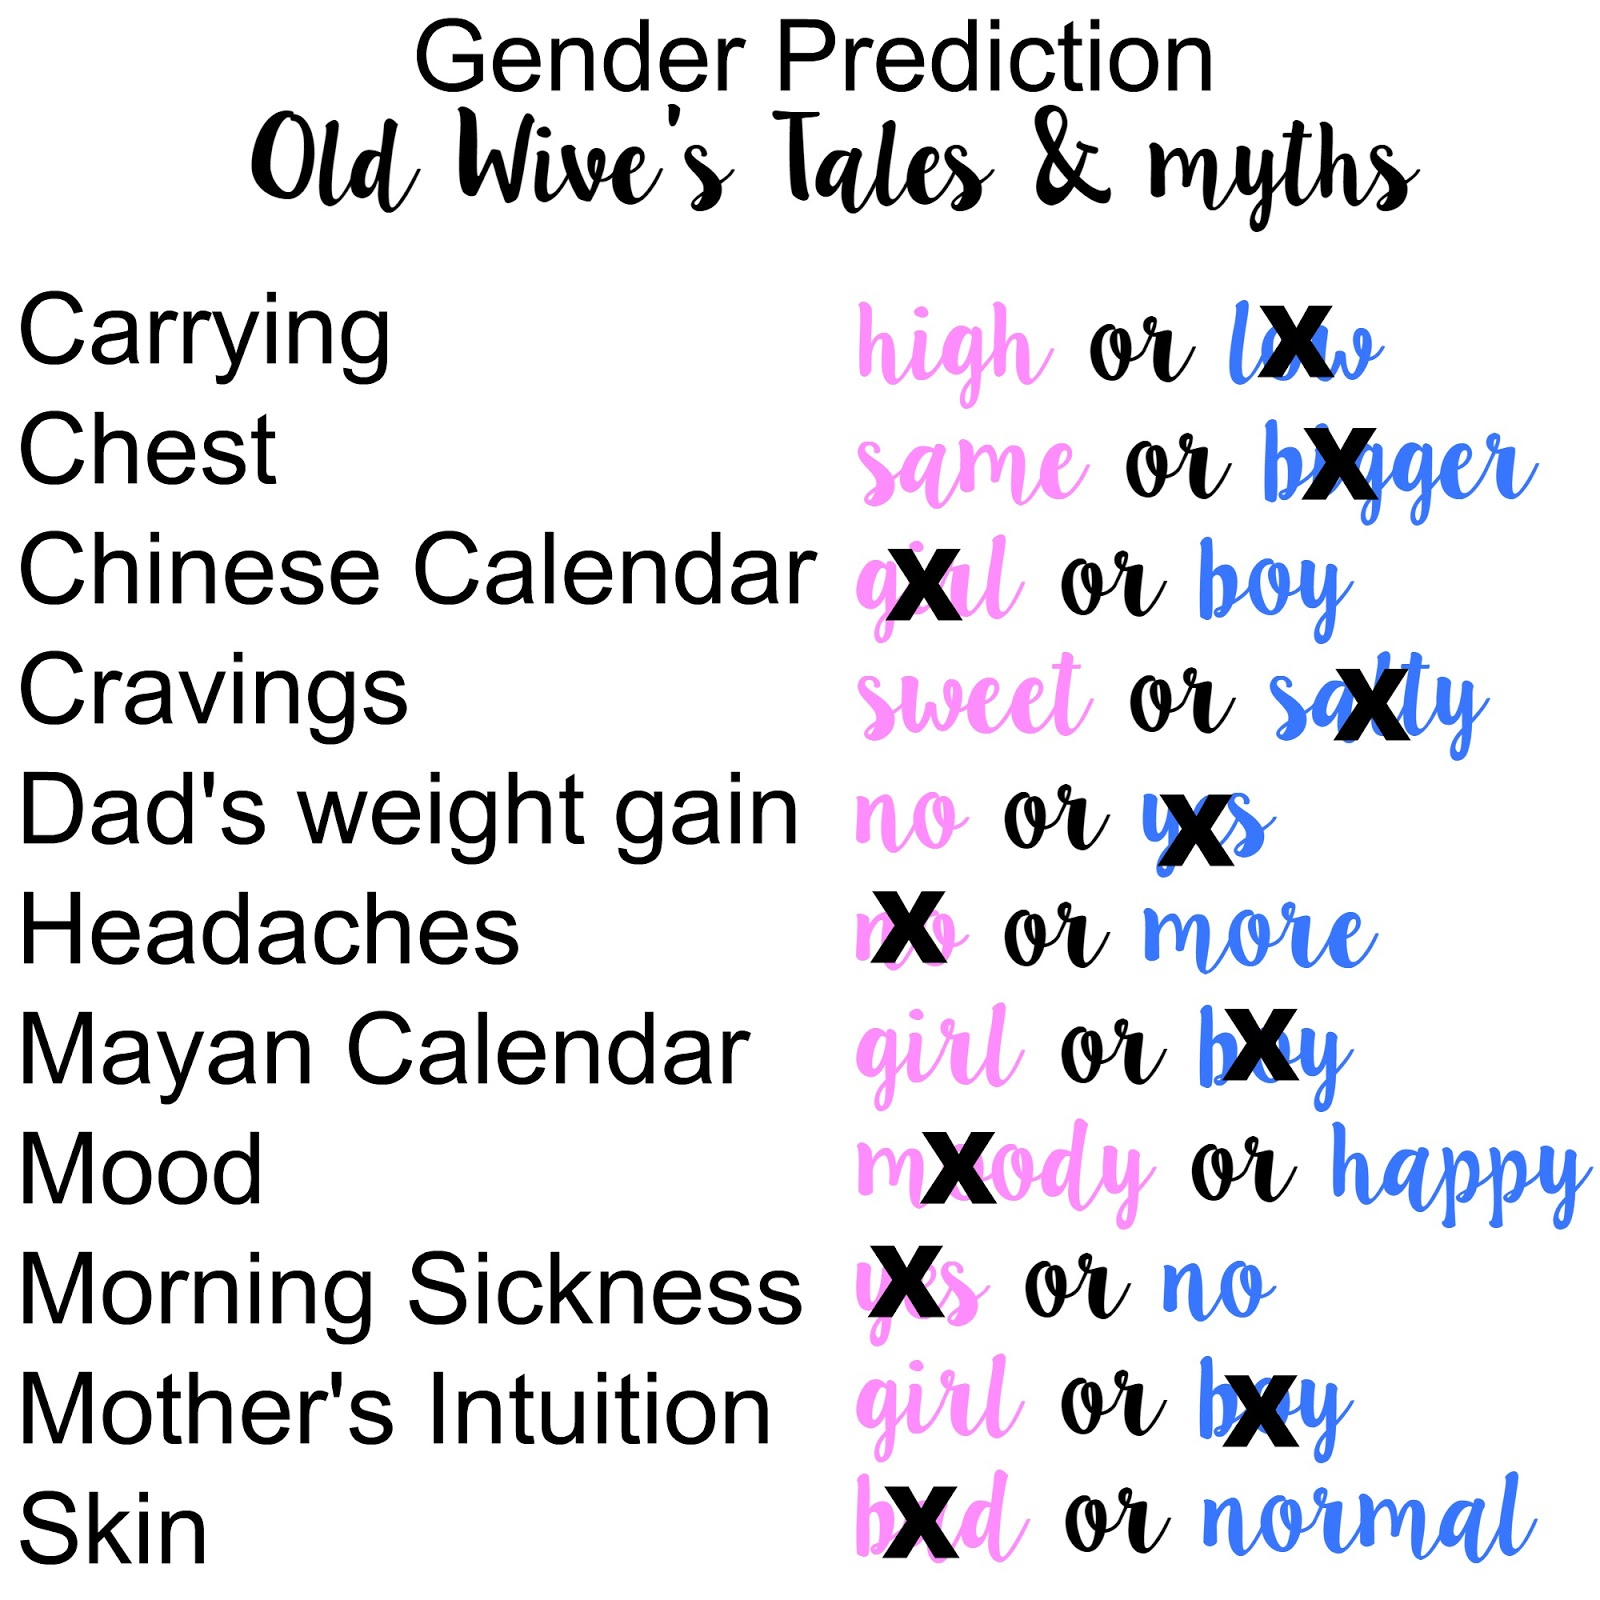 Buy Gender Prediction Myths intended for Mayan Calendar Gender